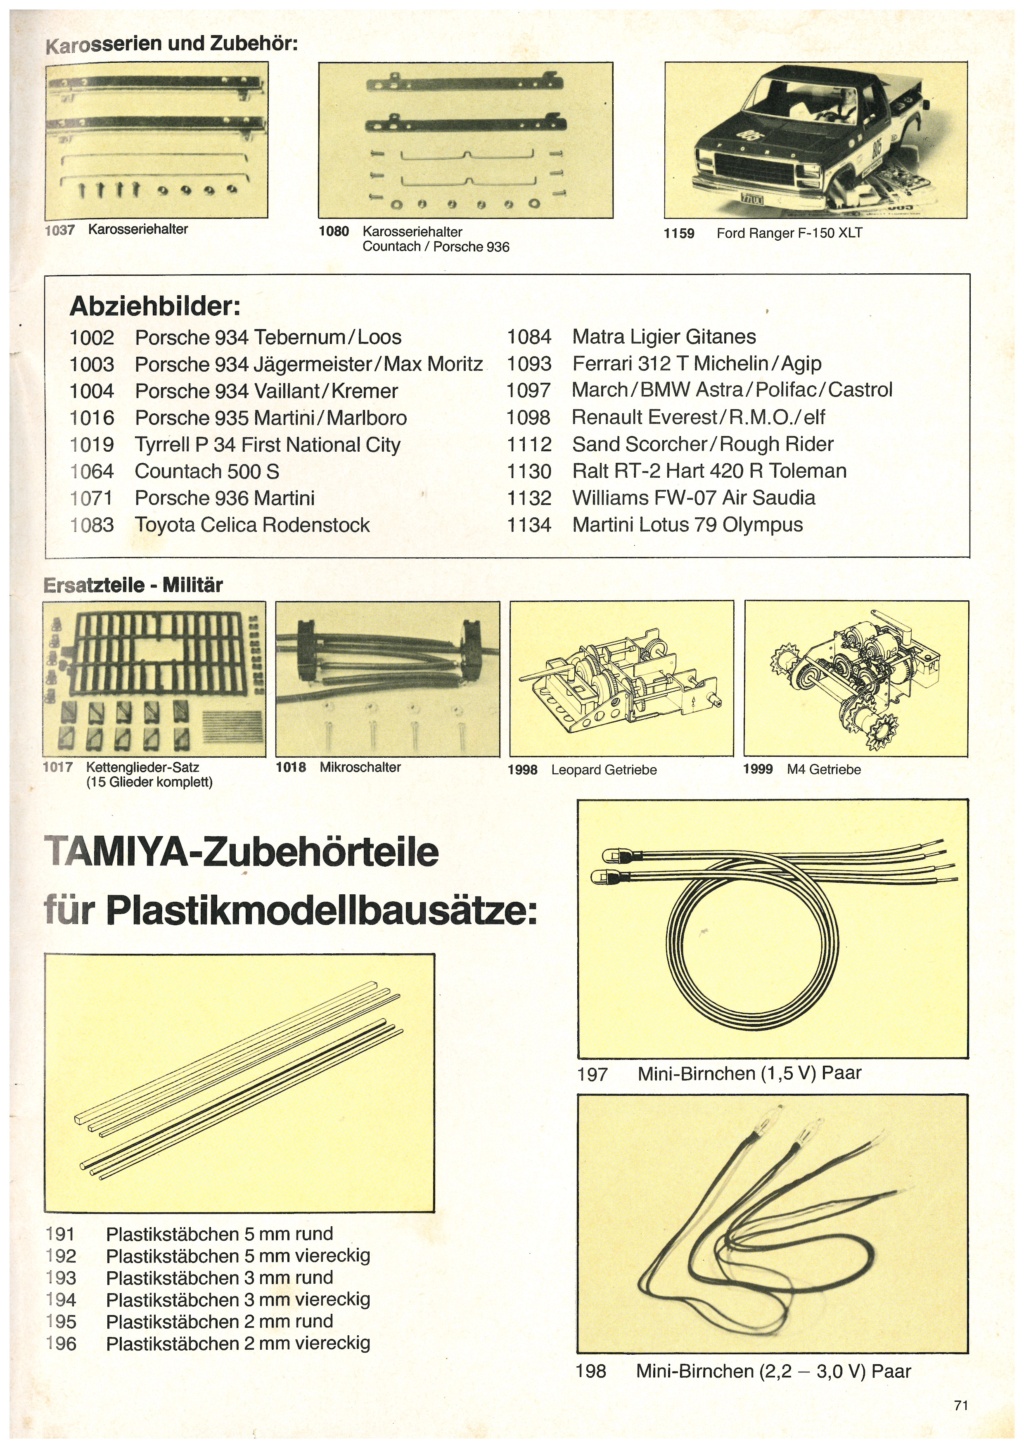 [TAMIYA HEINZ BEHRINGER 1982] Catalogue allemand importateur HEINZ BEHRINGER 1982 Tami3331